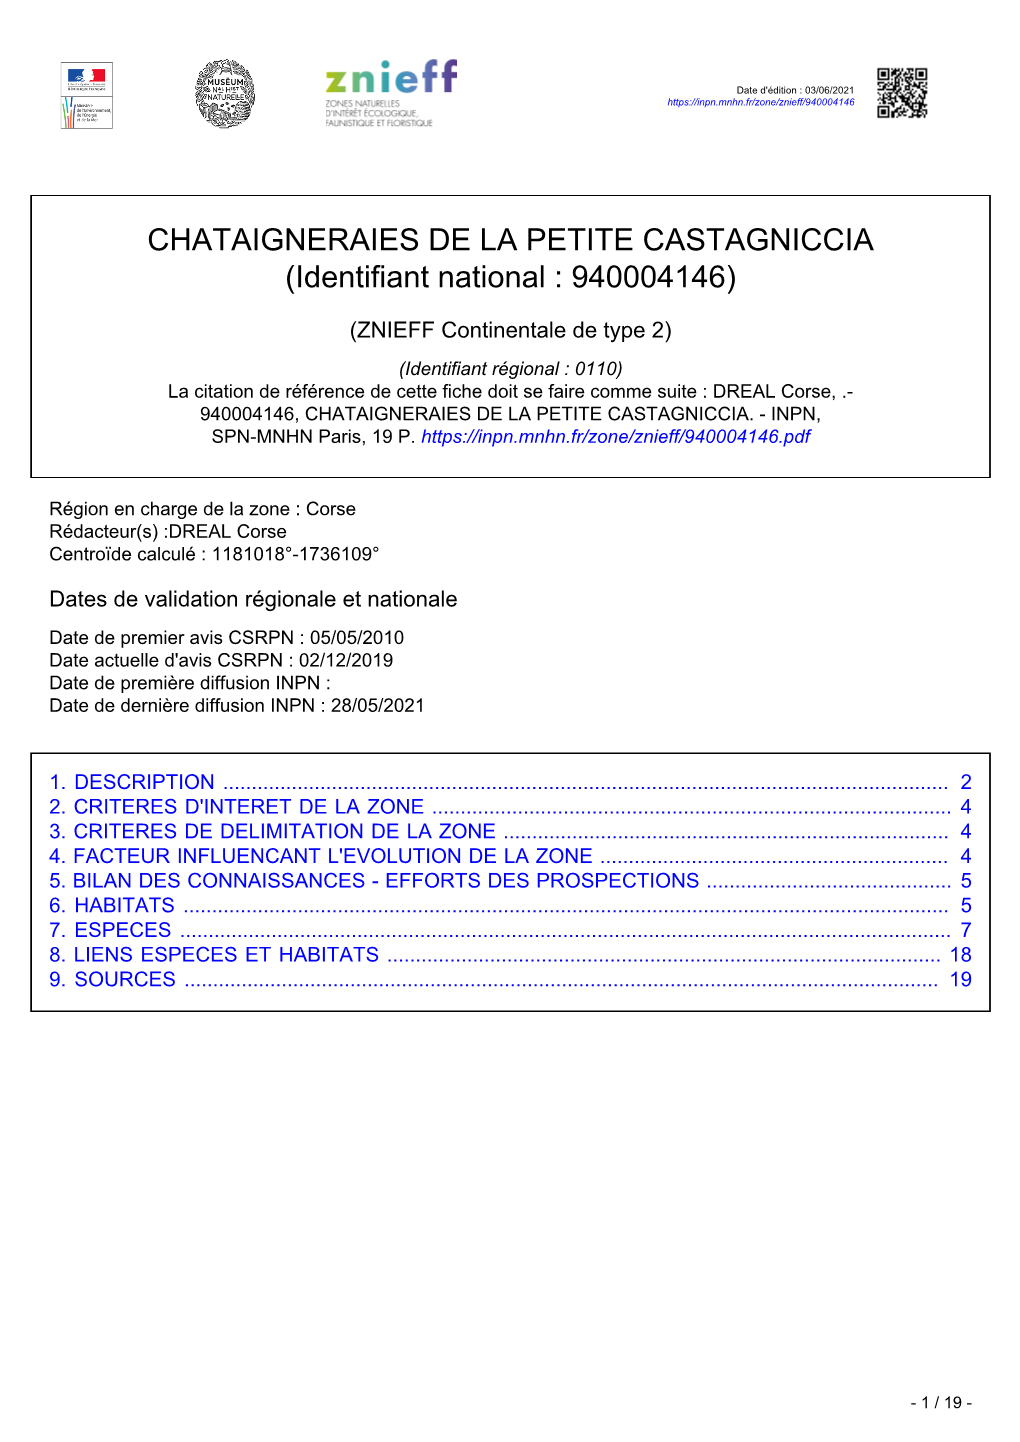 CHATAIGNERAIES DE LA PETITE CASTAGNICCIA (Identifiant National : 940004146)